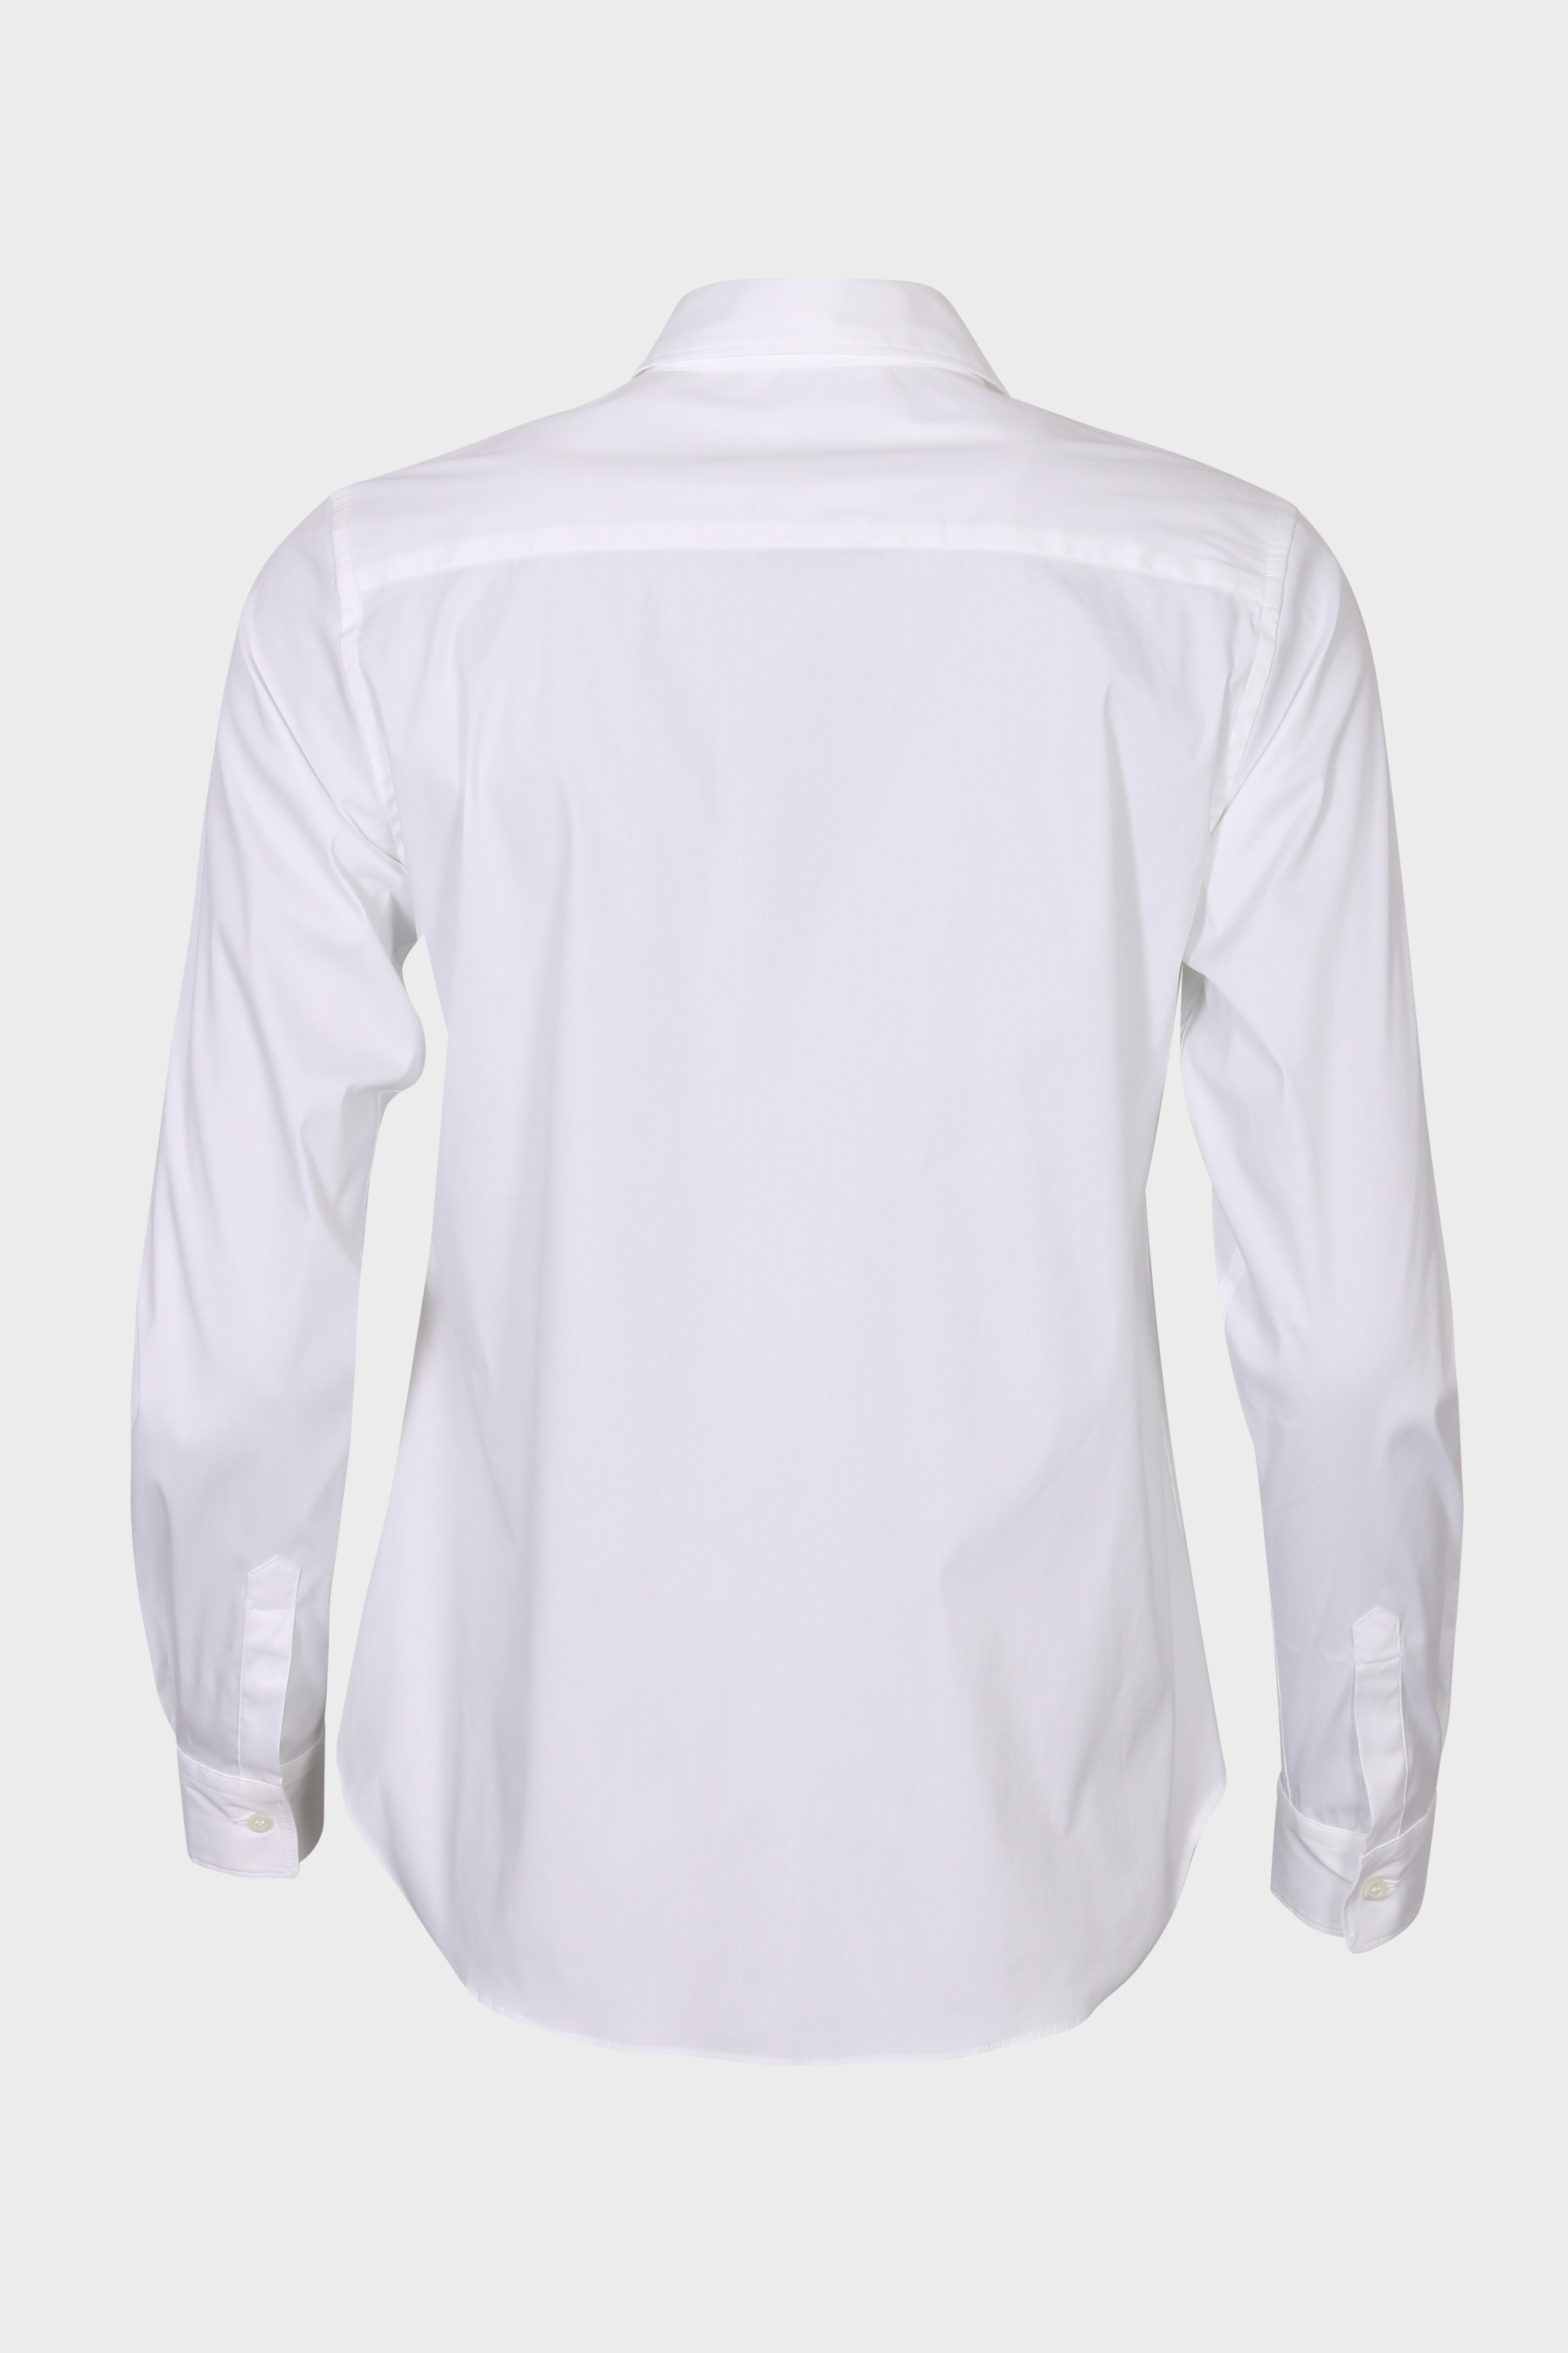 ASPESI White Shirt IT42 / DE36